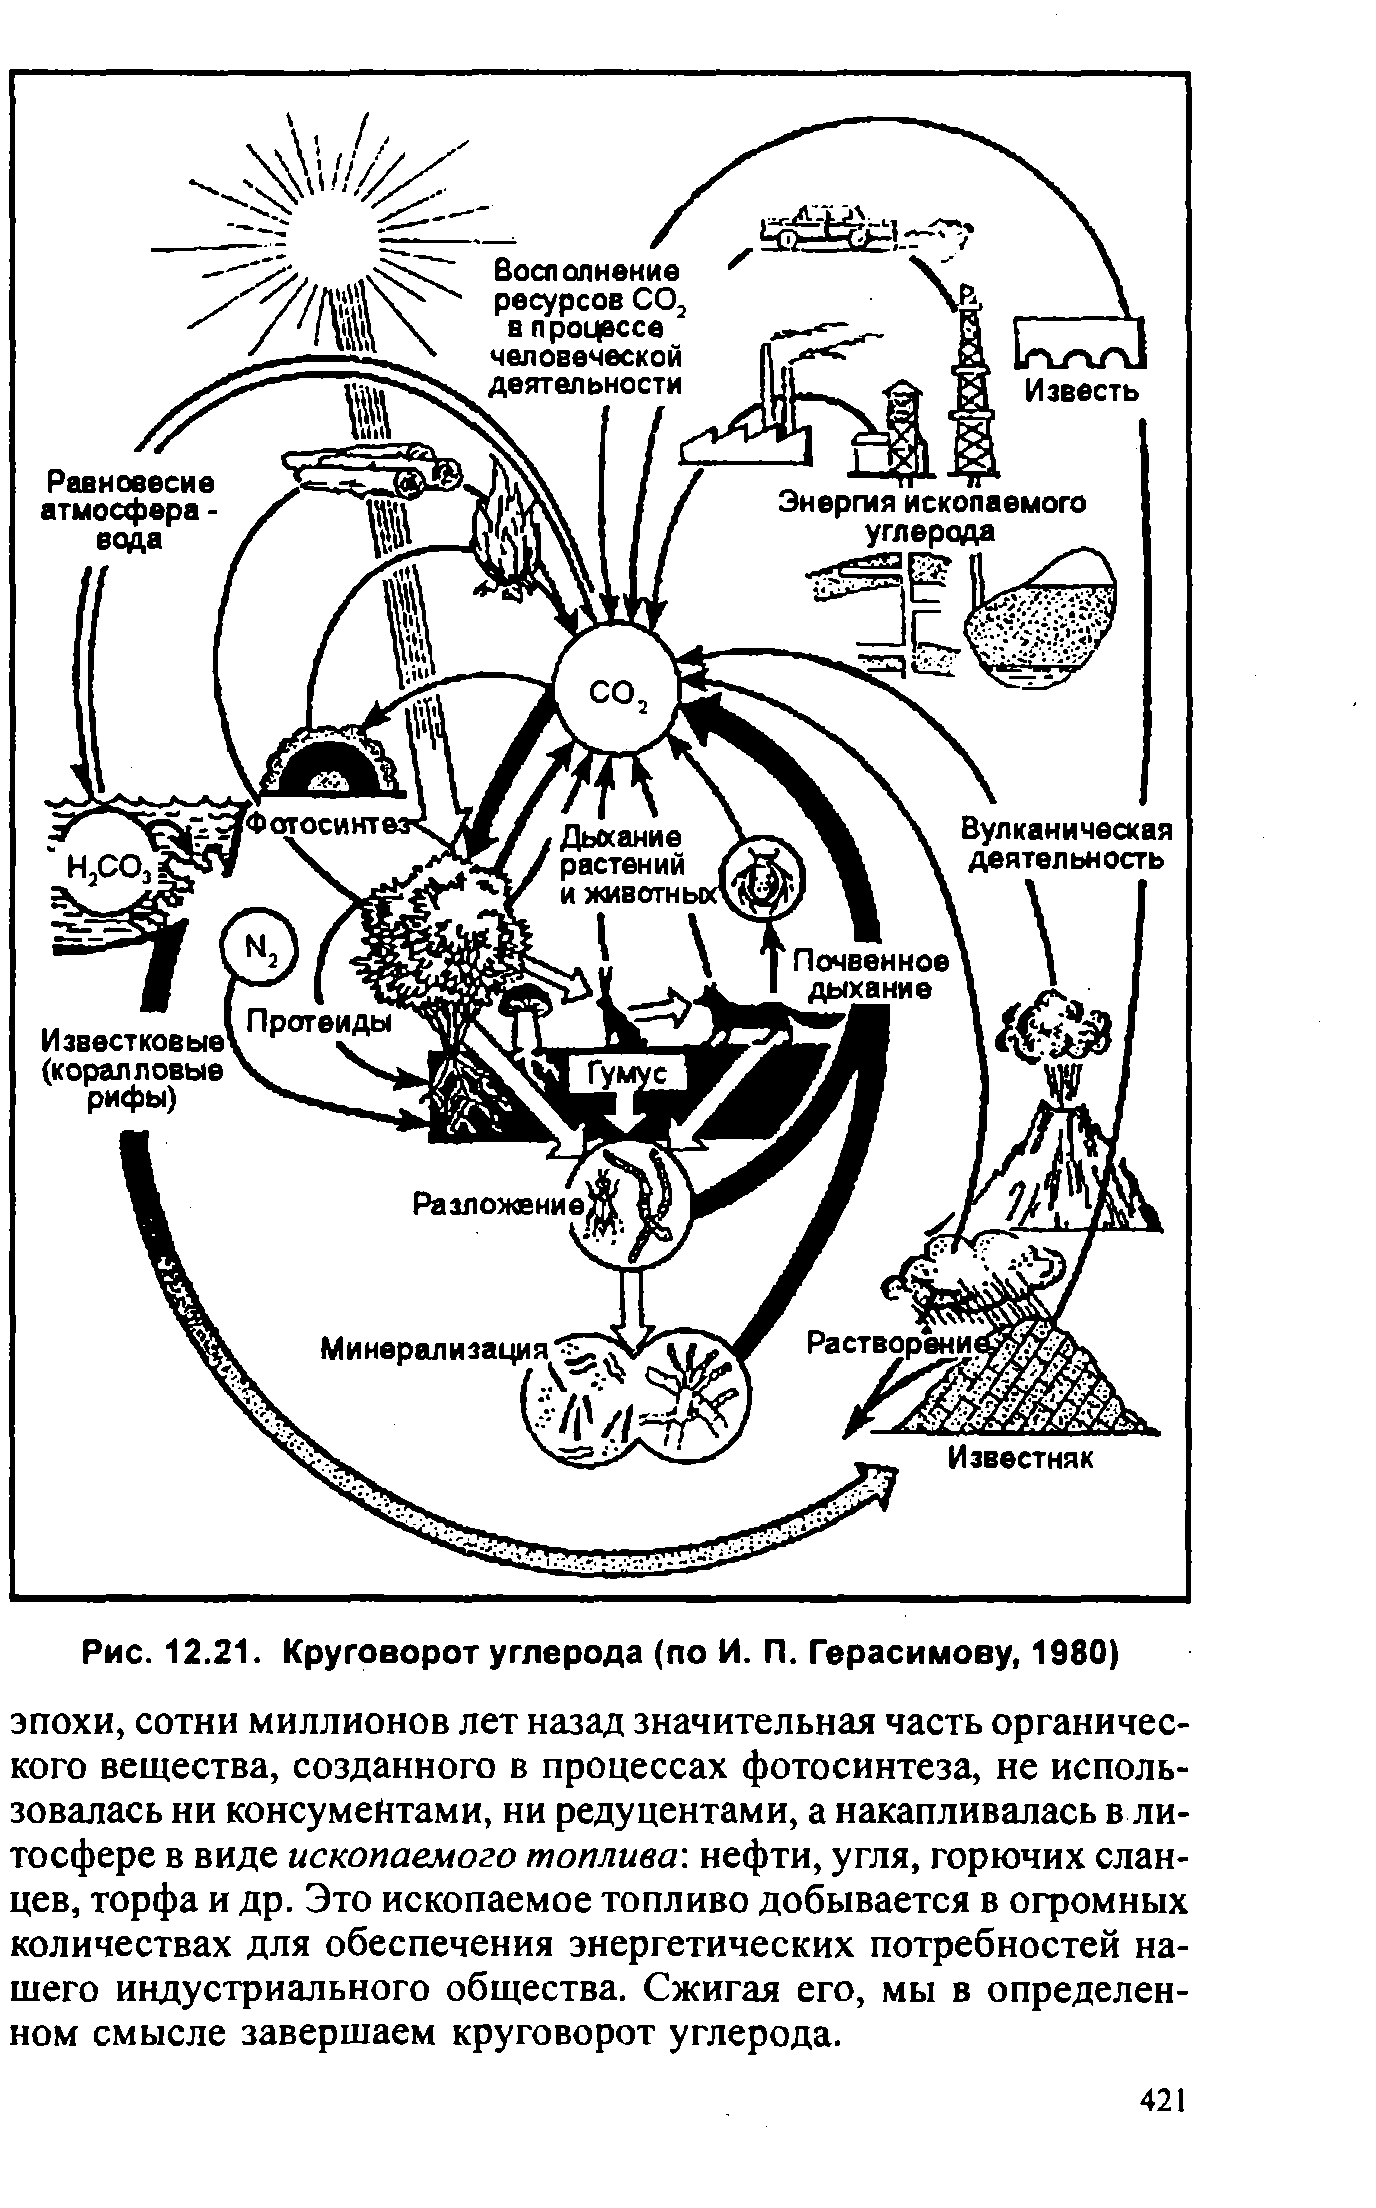 Кальций в биосфере. Схема круговорота углерода в водной и наземной экосистемах. Круговорот углерода (по ф. Рамад, 1981). Круговорот углерода в природе схема. Схема биогеохимического цикла углерода в биосфере.